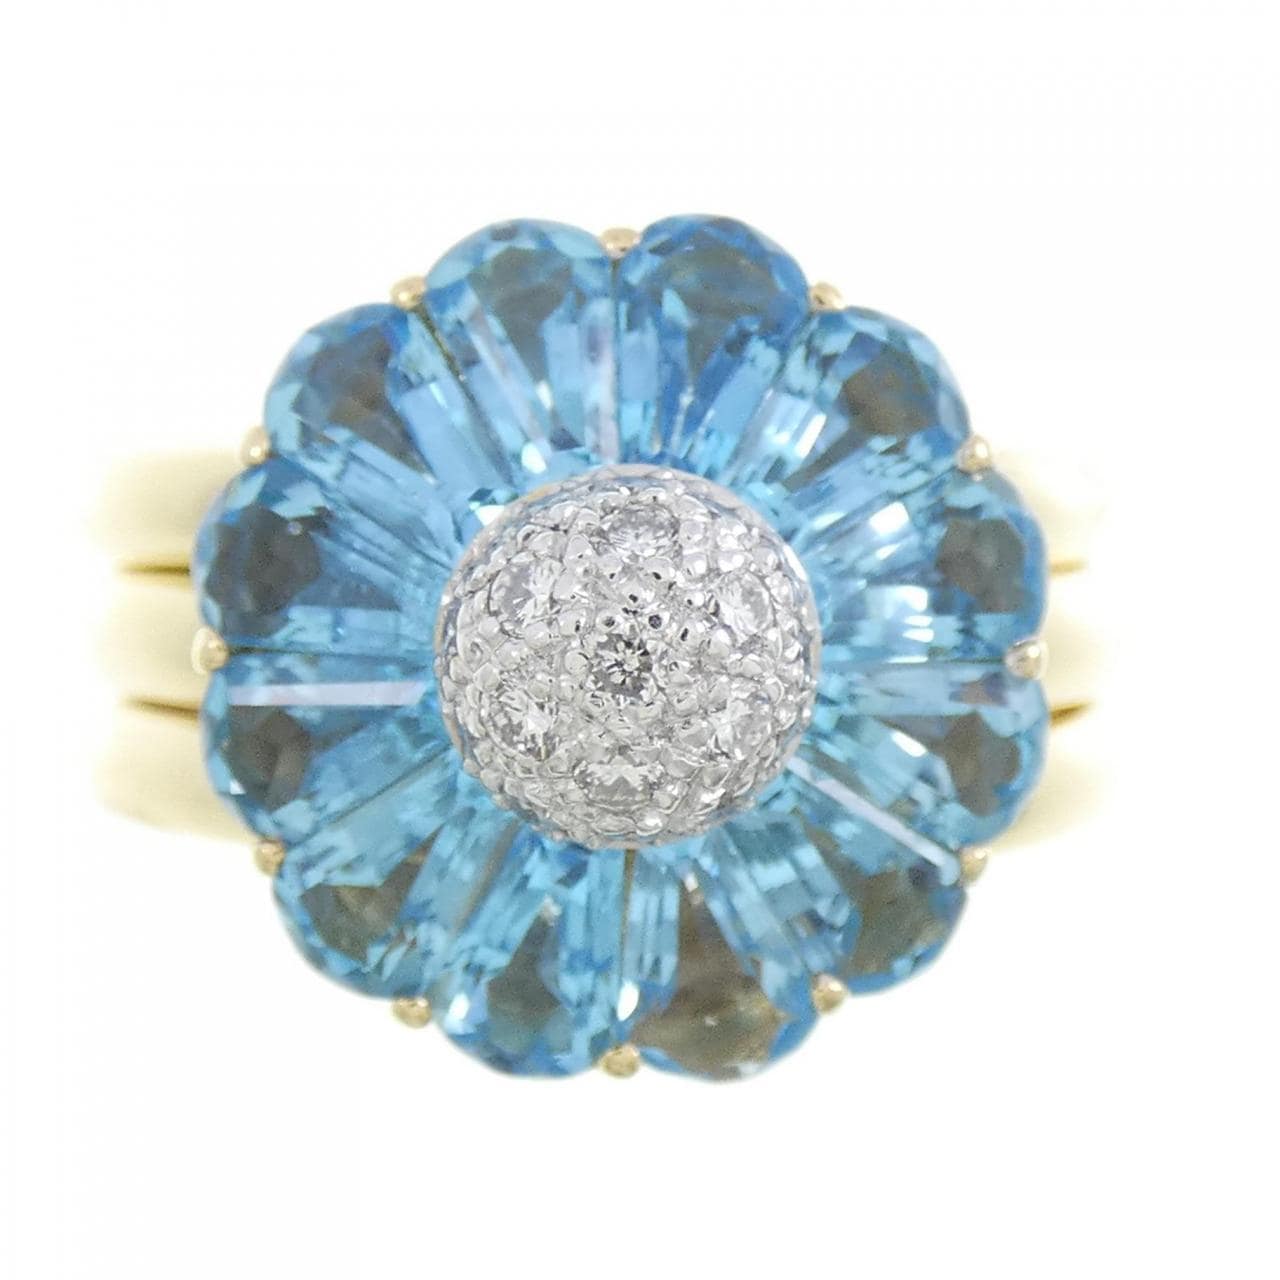 K18YG/K18WG Flower Blue Topaz Ring 3.65CT